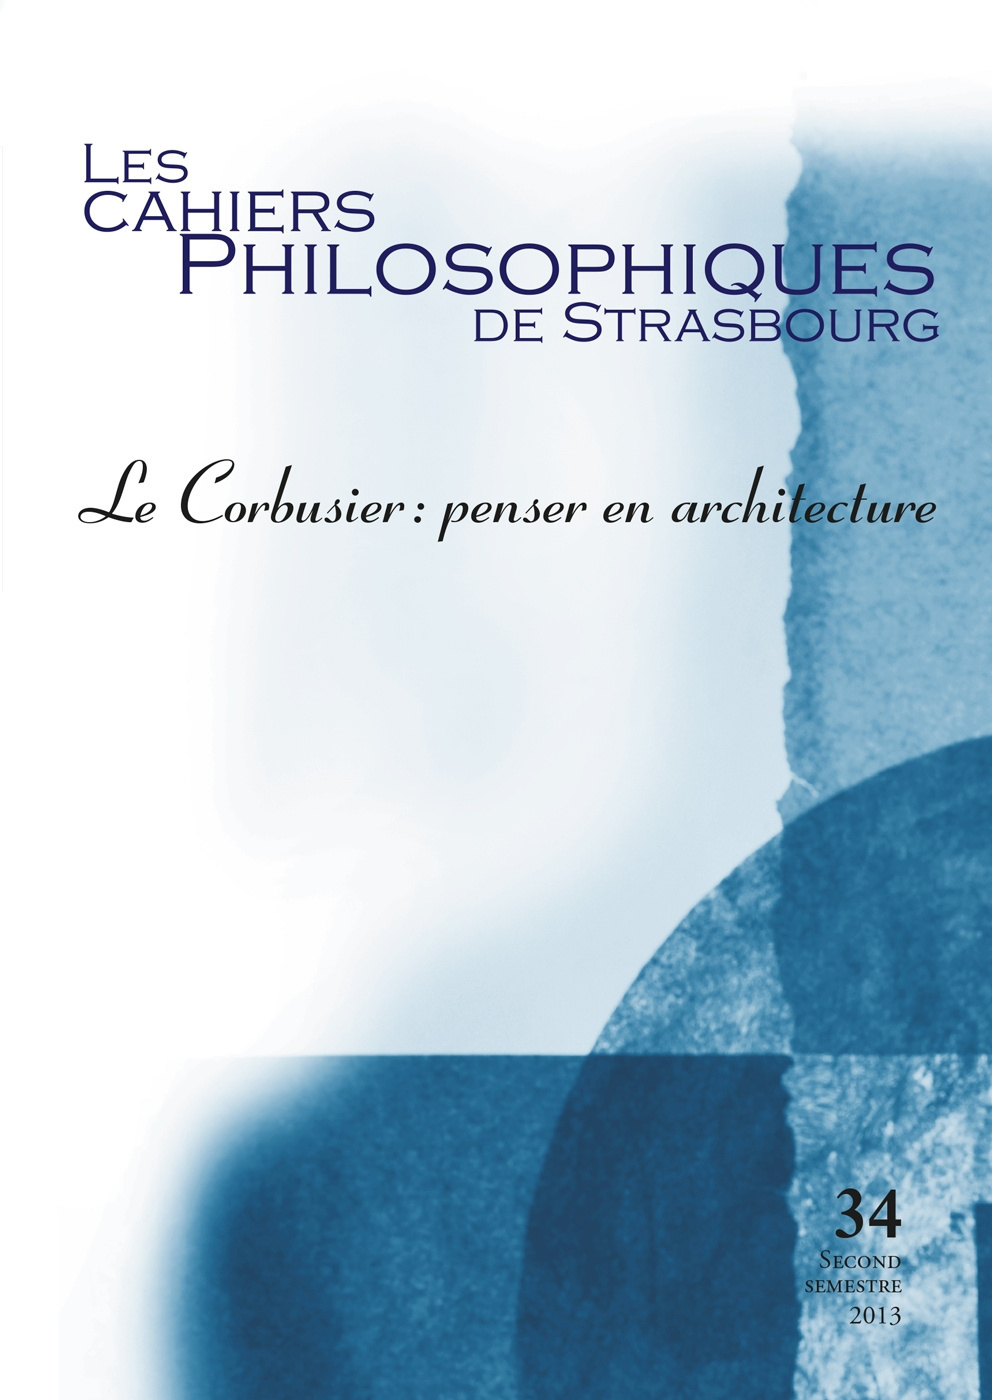 Les Cahiers philosophiques de Strasbourg n°34/2013